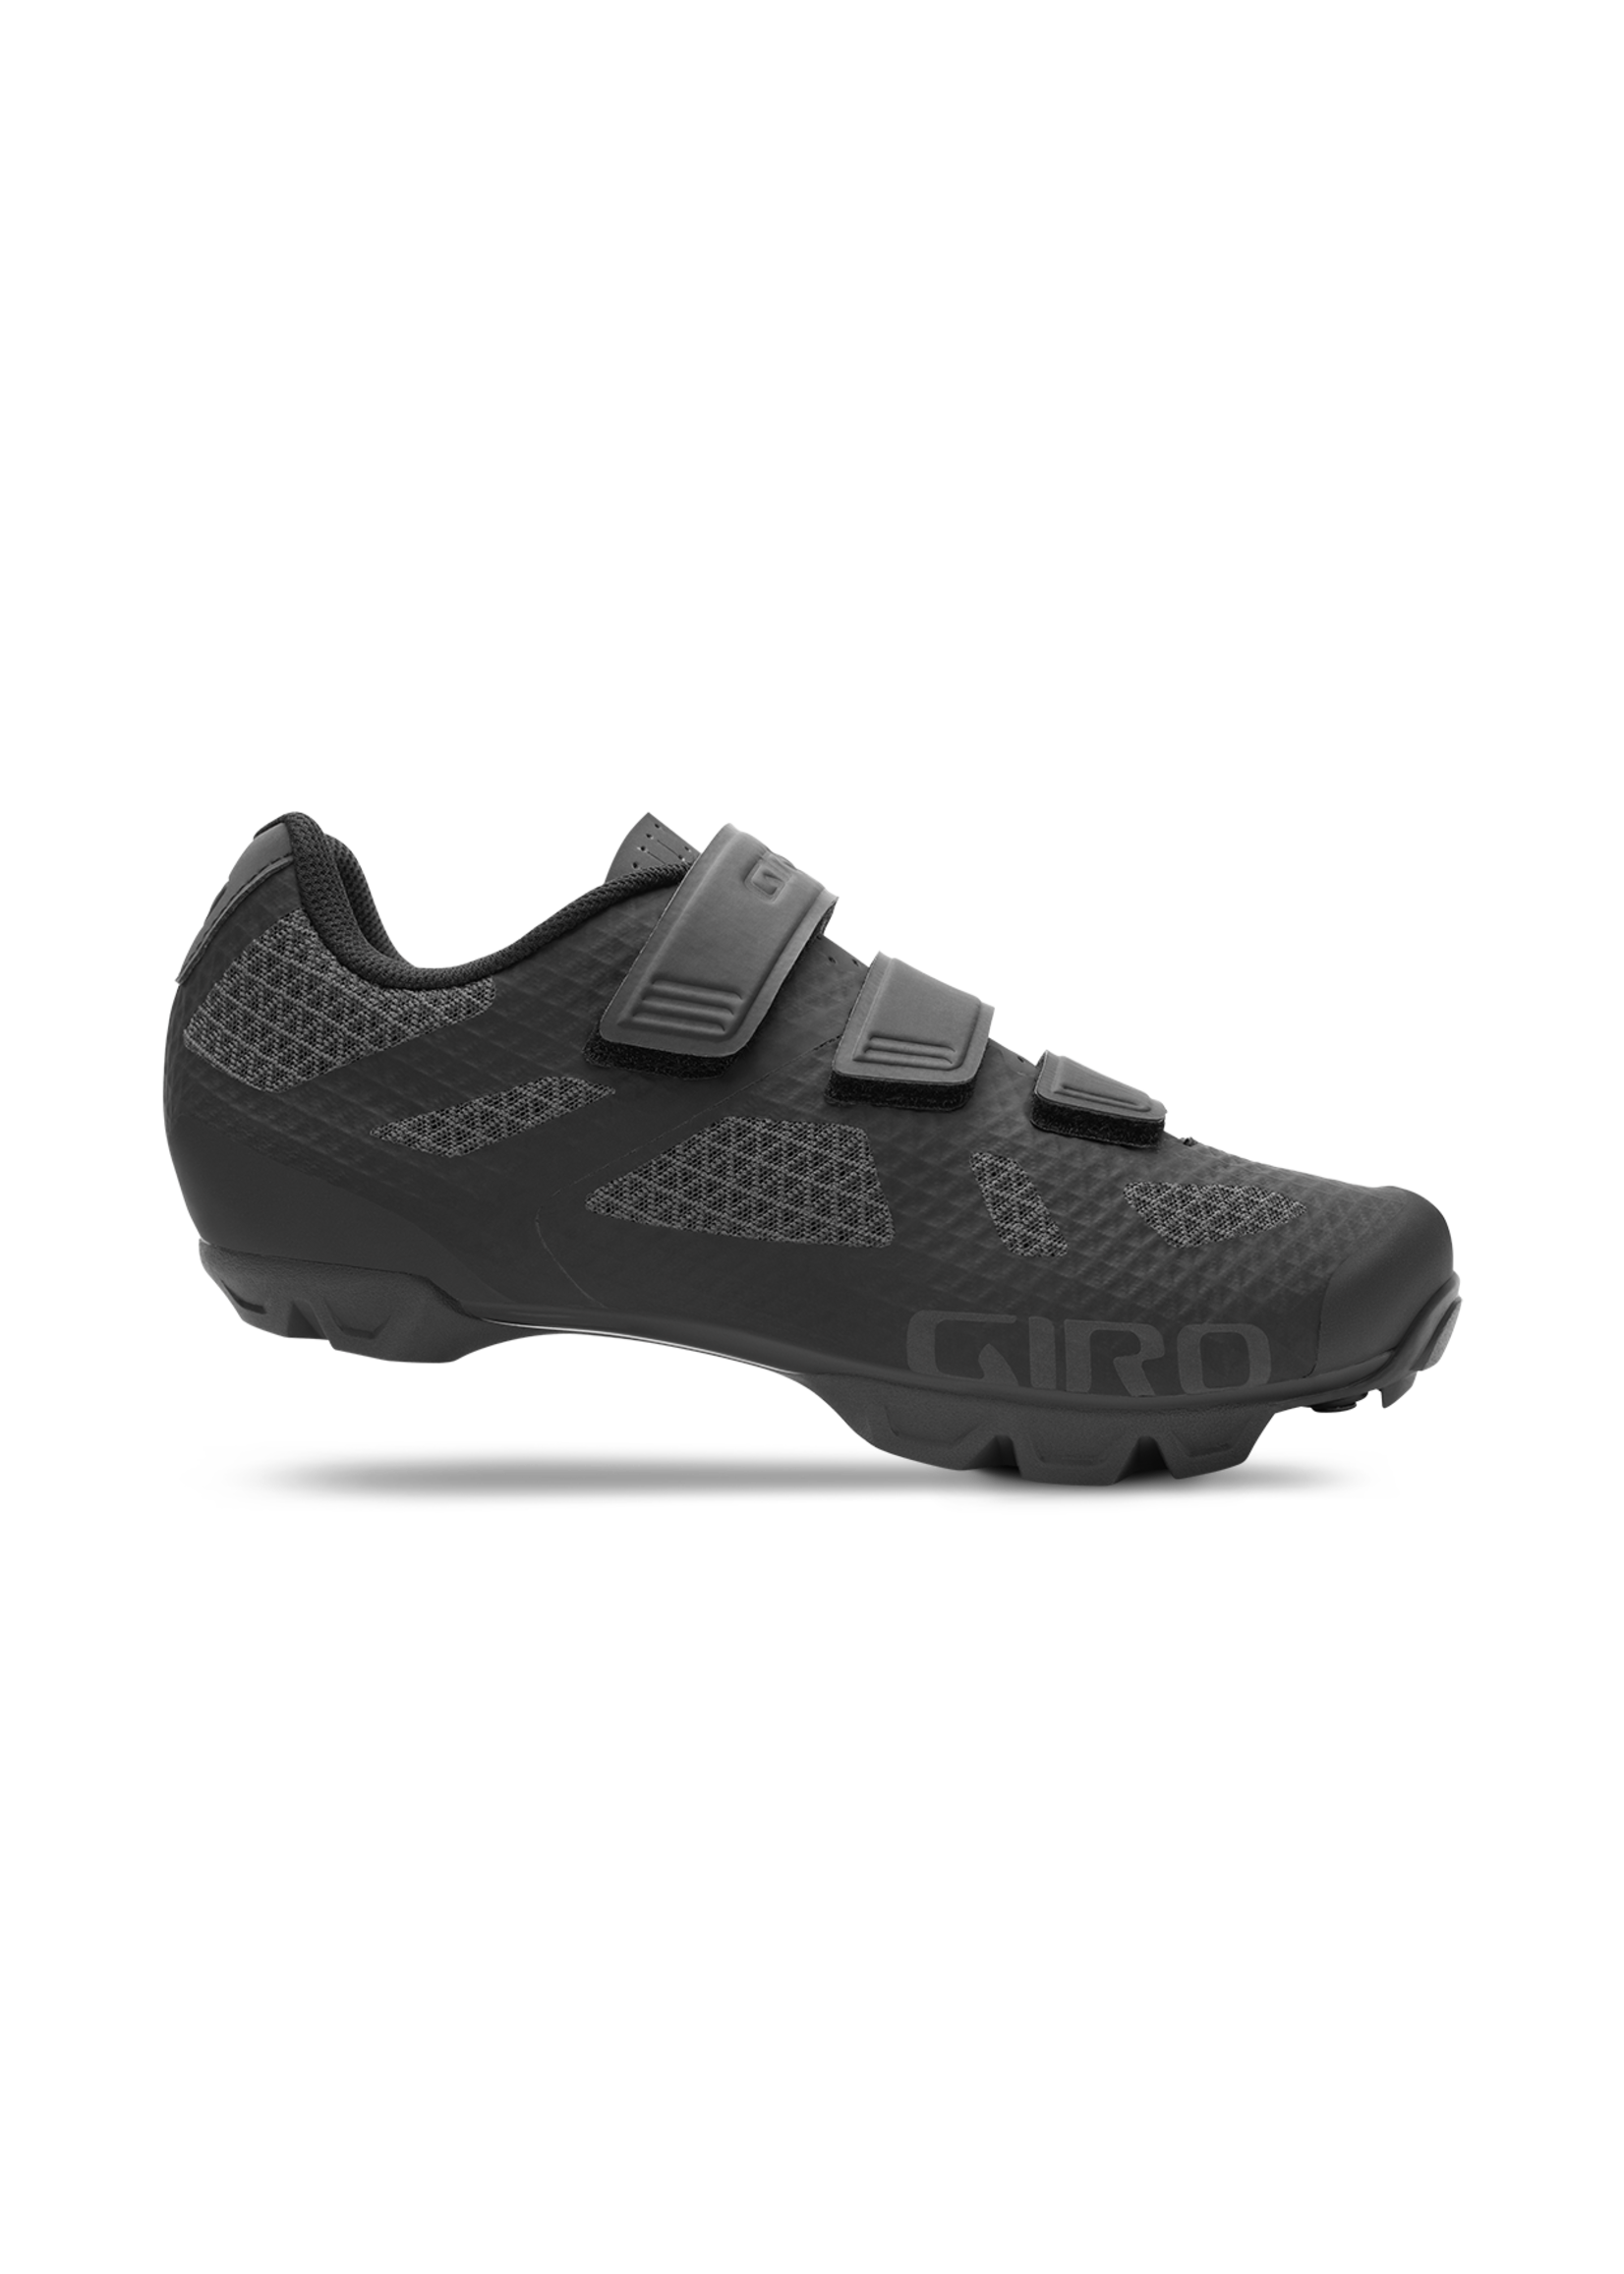 Giro Ranger Cycling Shoe - Black